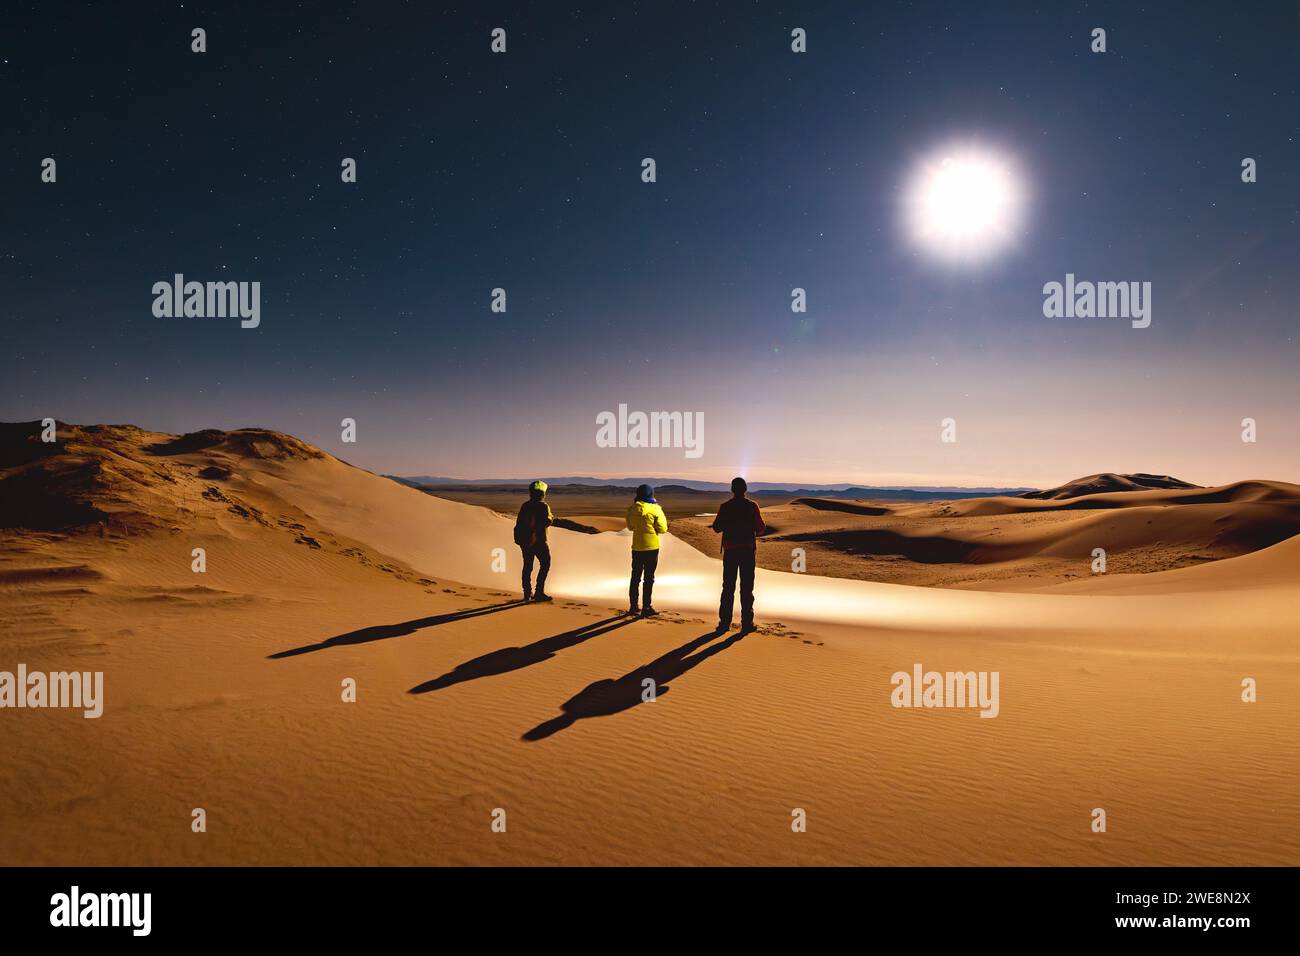 Trois silhouettes de randonneurs avec des phares sont debout à la dune du désert de nuit et regarde le ciel étoilé et la lune Banque D'Images